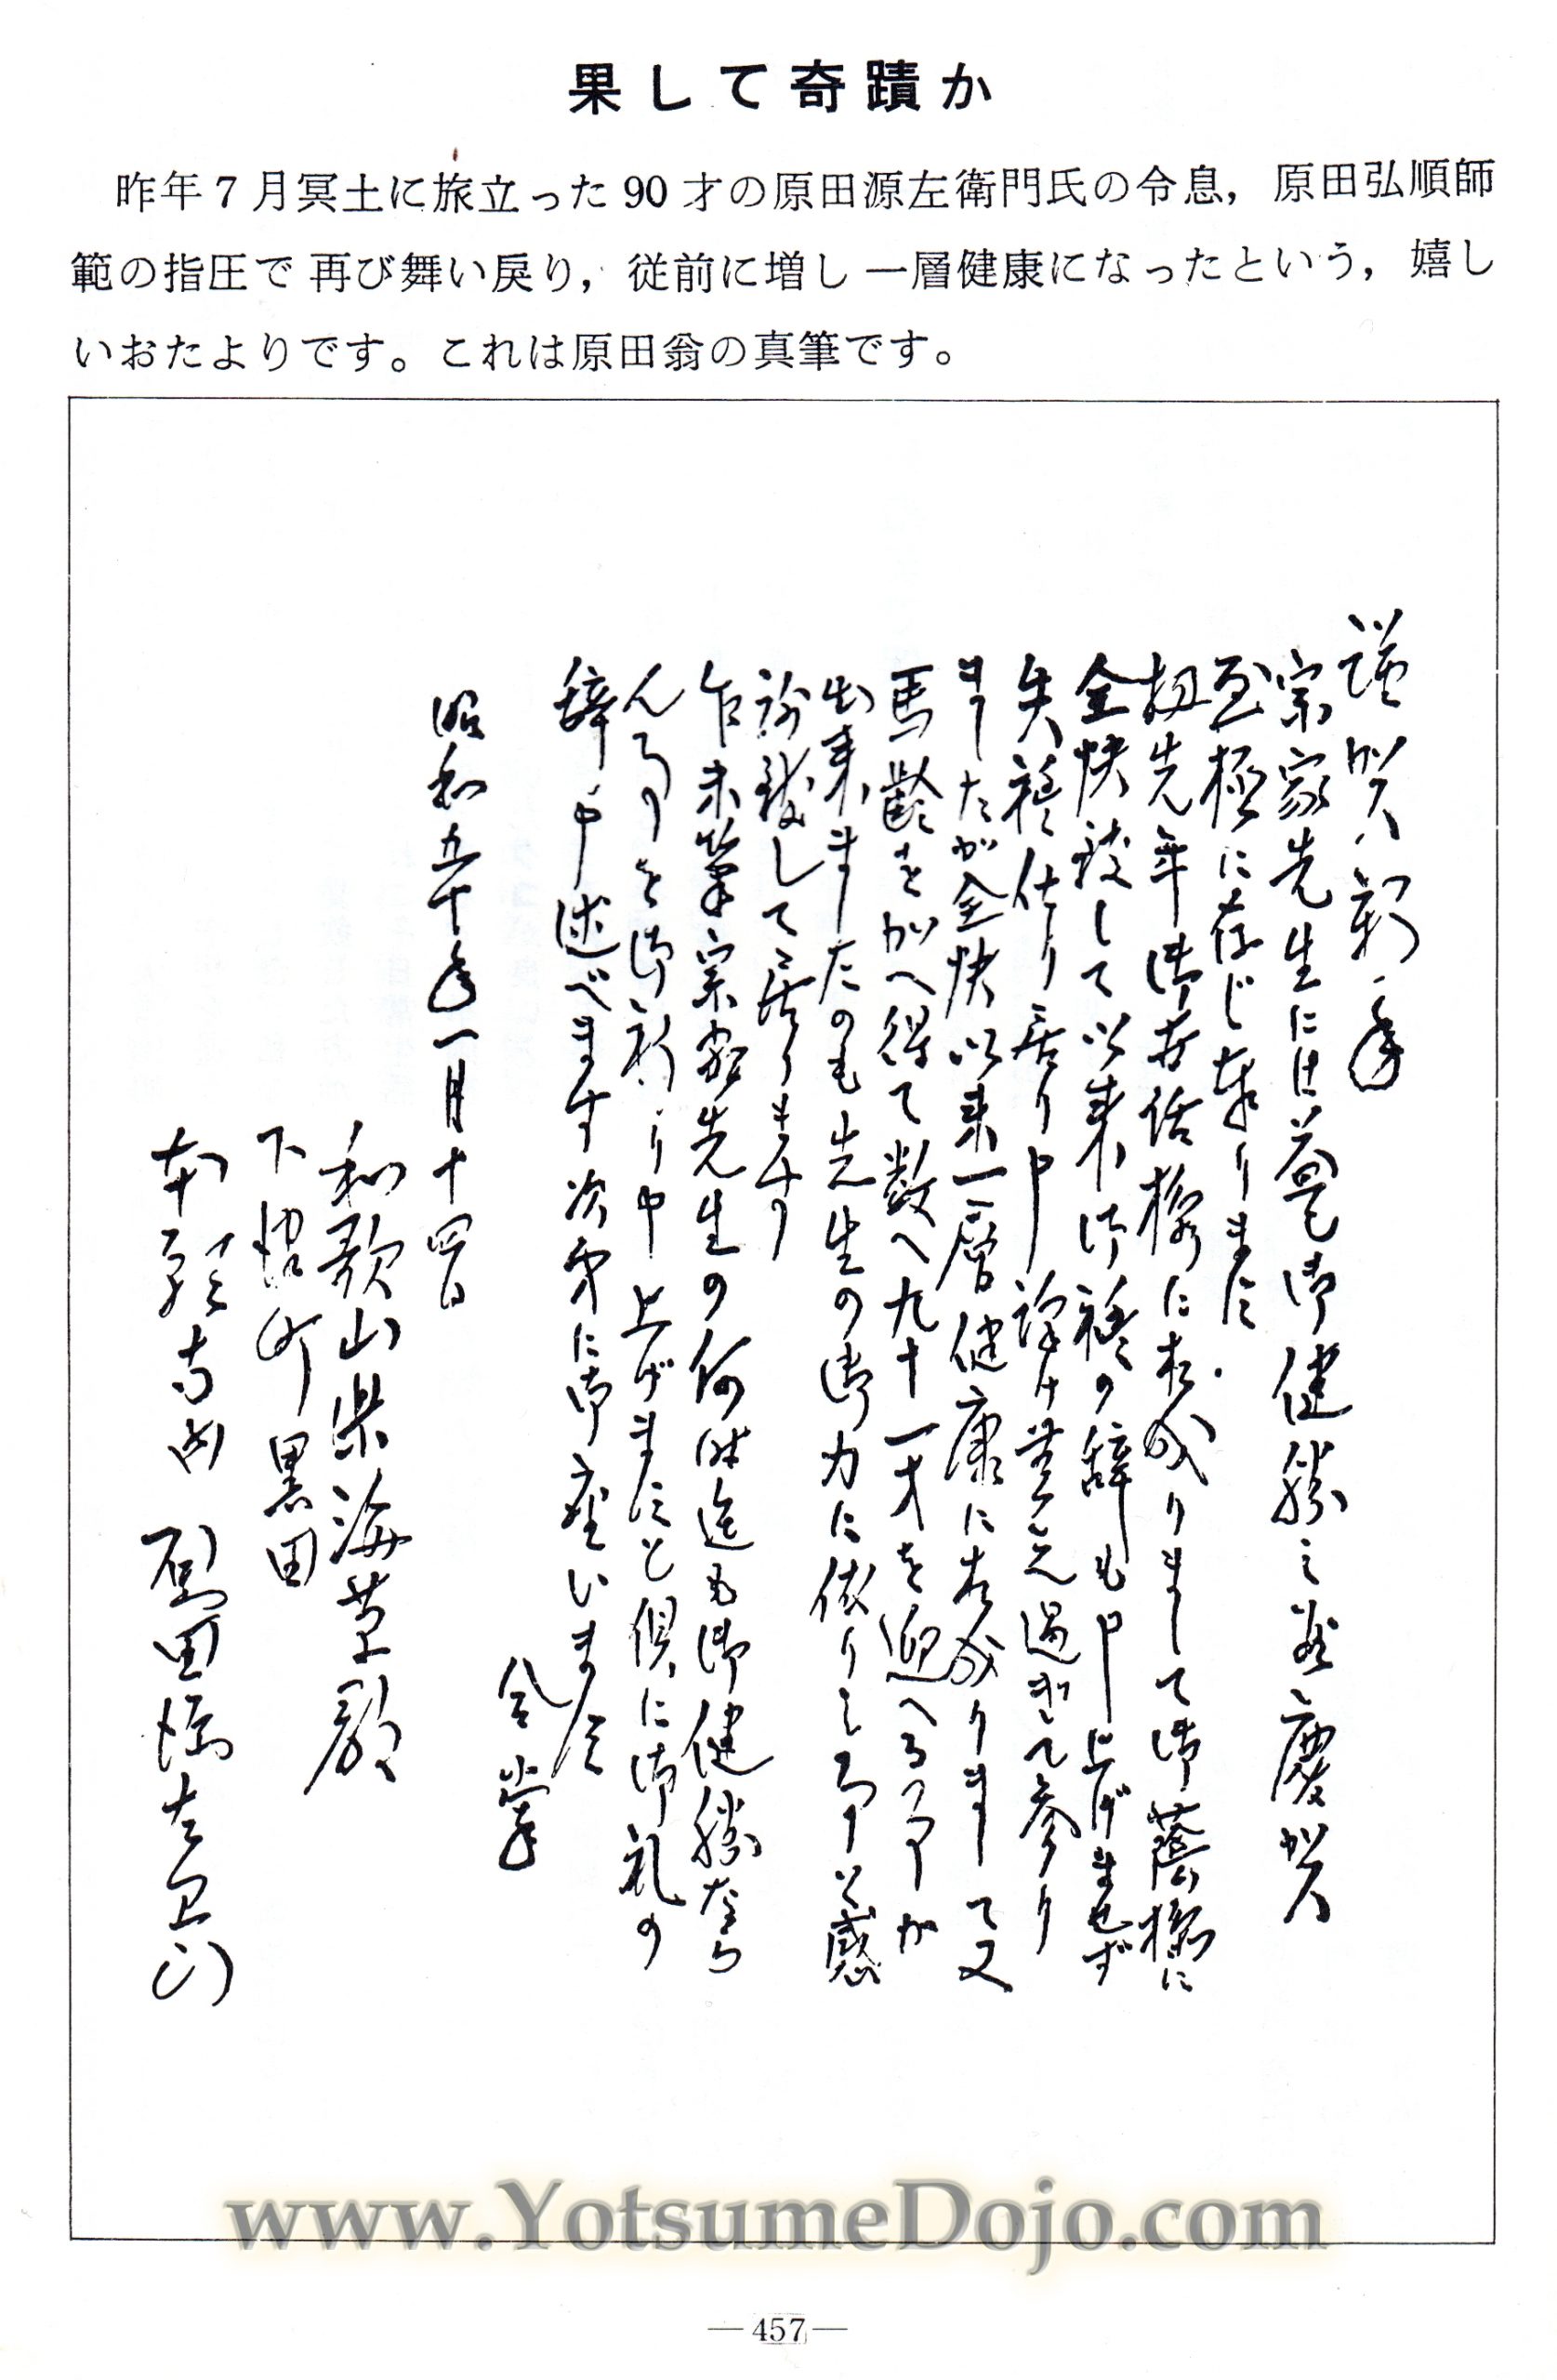 Letter From Harada Genzaemon